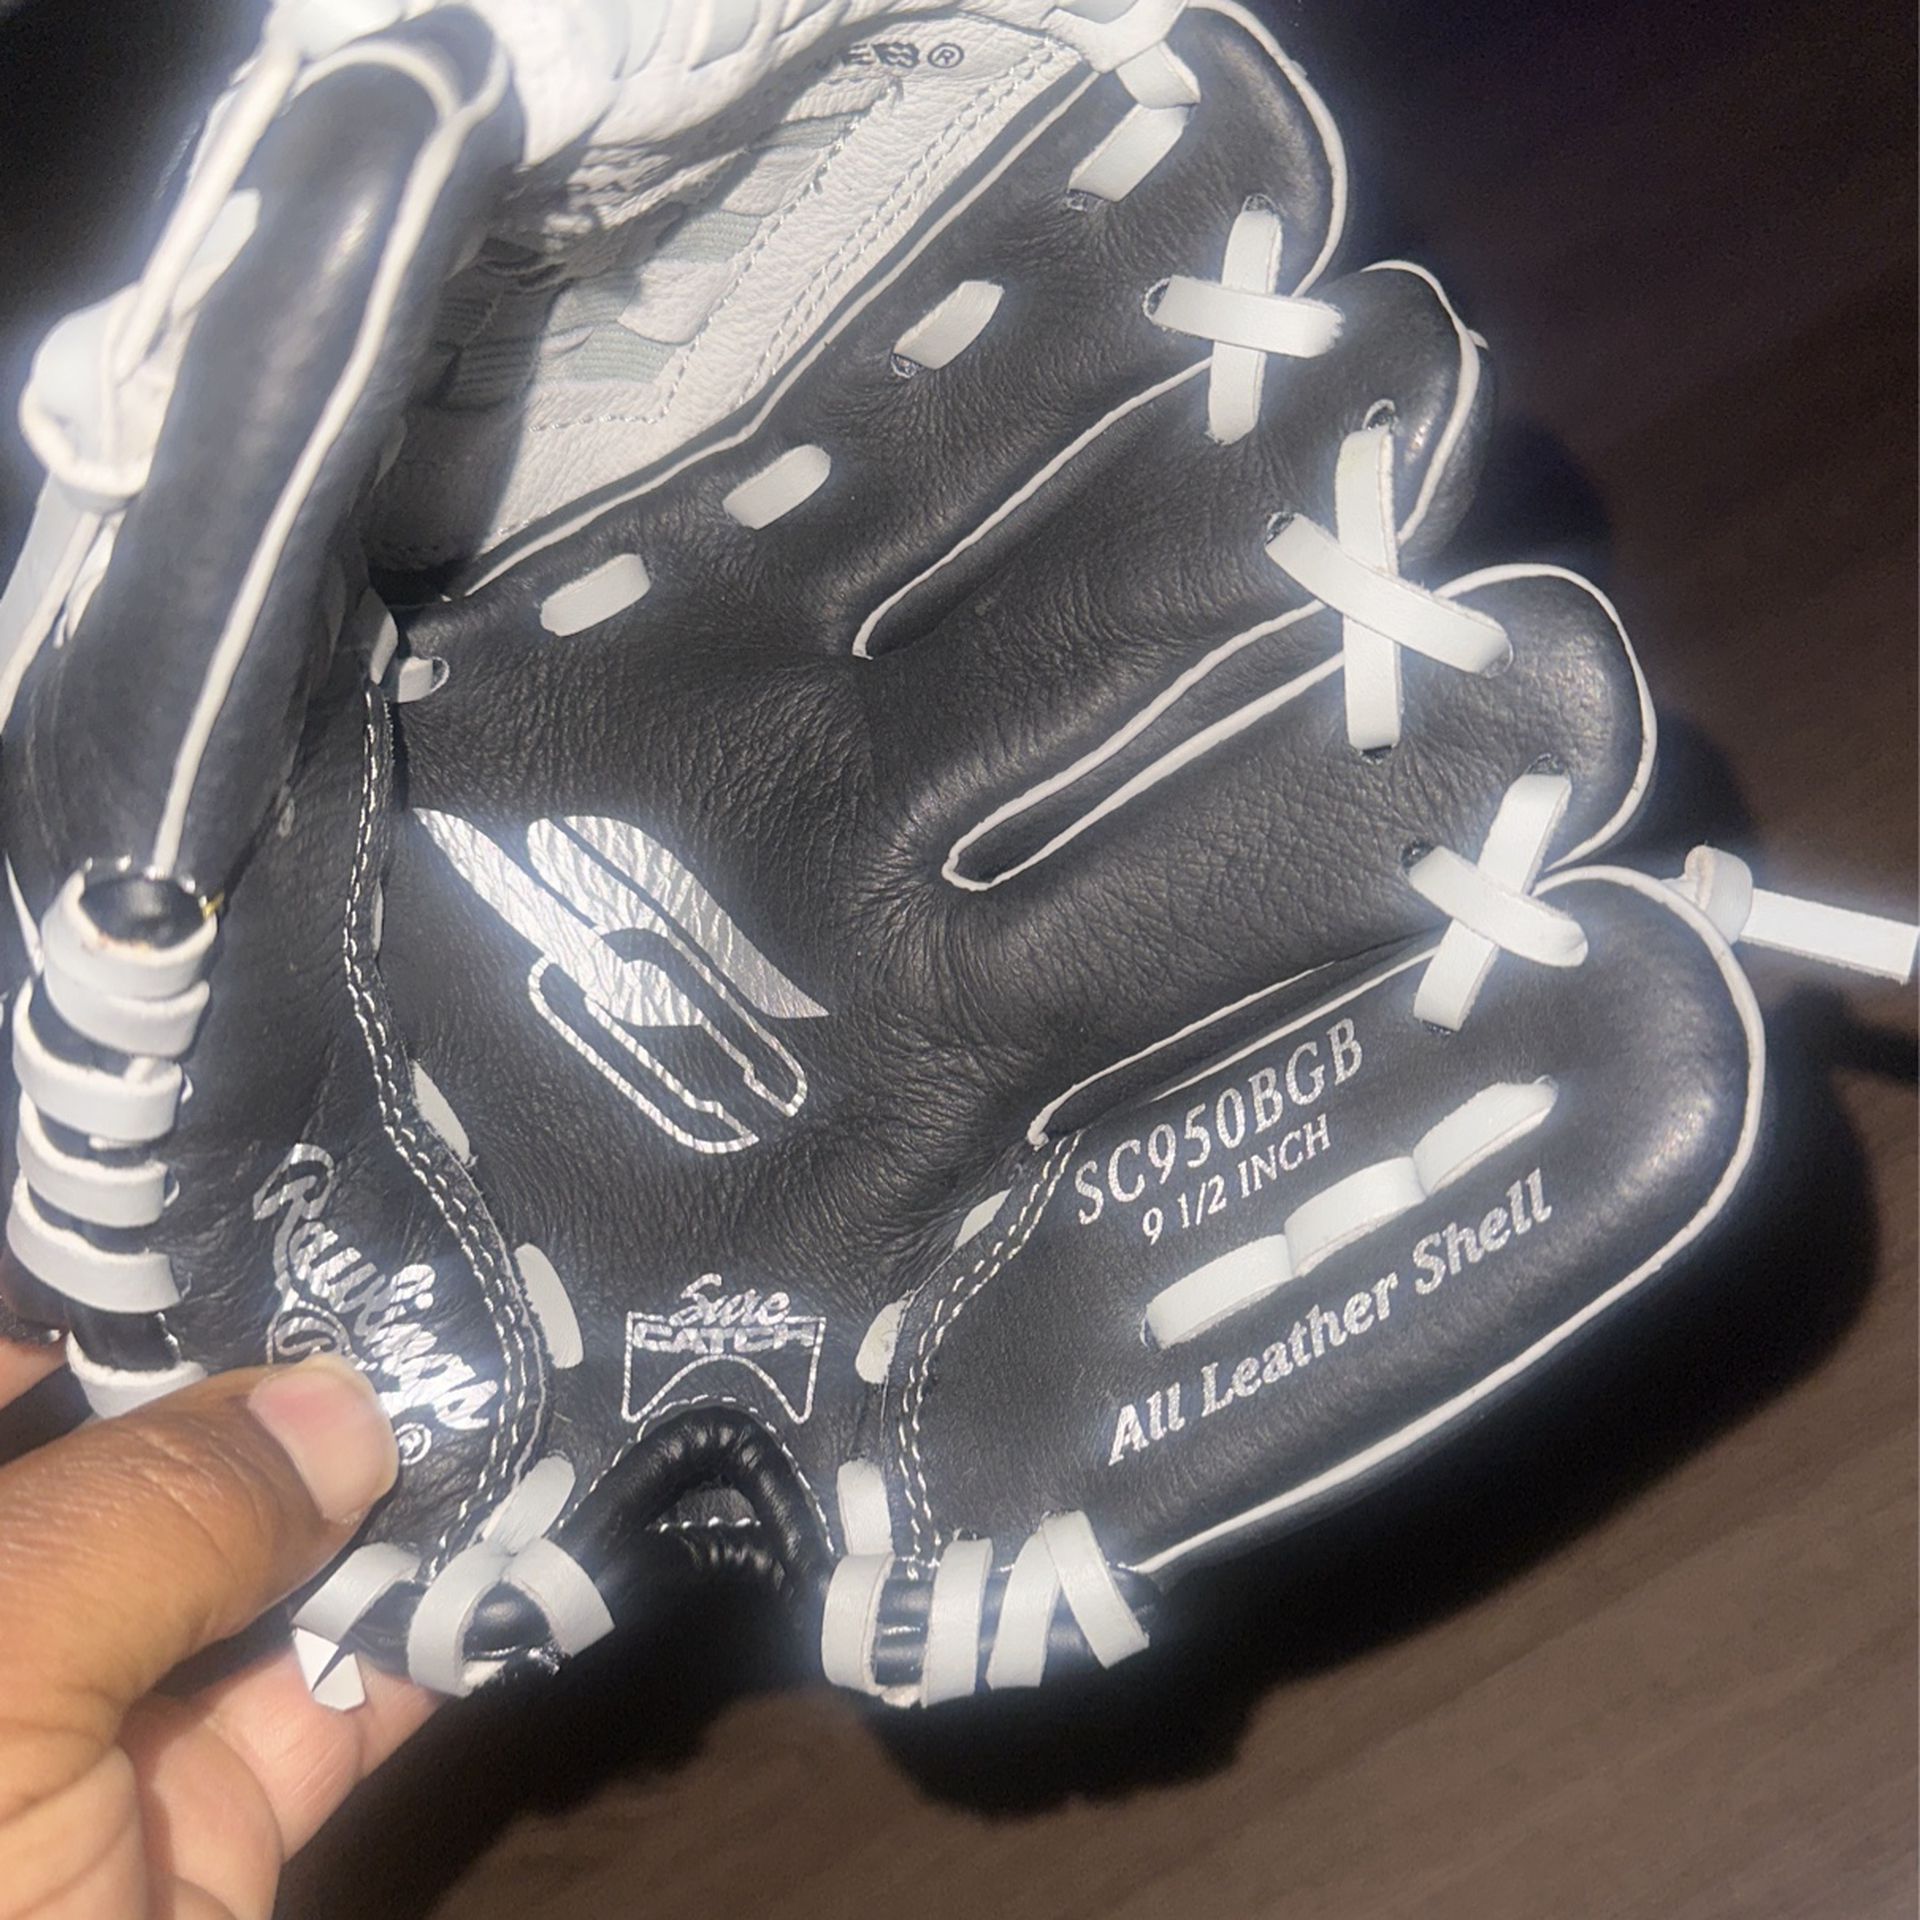 Brand New Rawlings Baseball Glove 